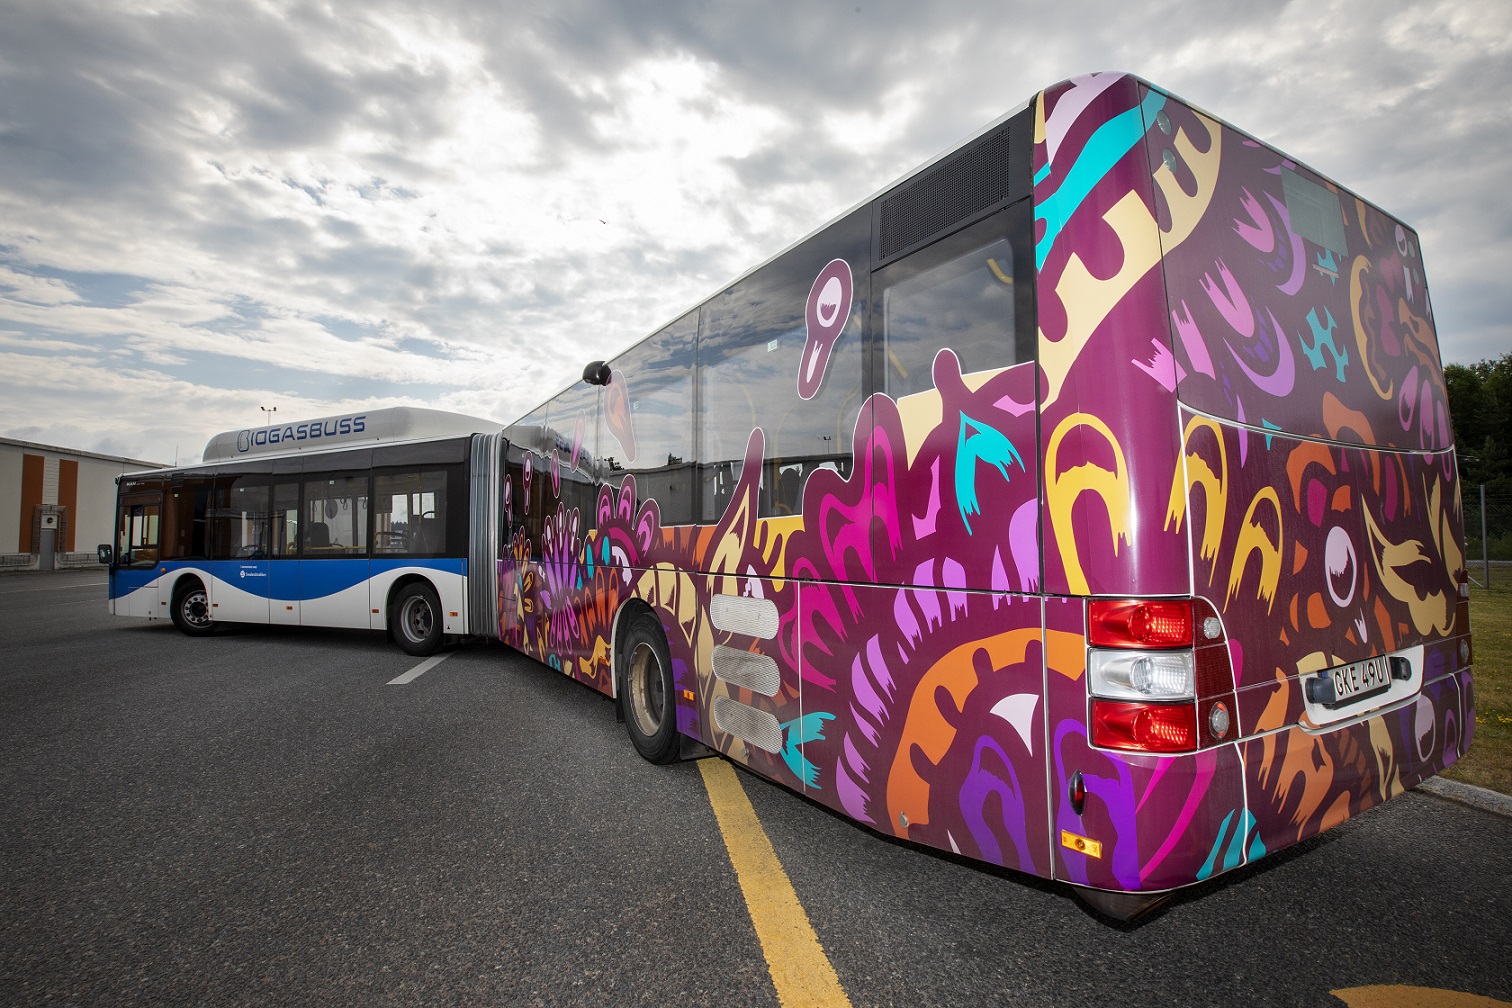 En av stadens stadsbussar, en ledbuss som har ena halvan utsmyckad med ett mönster i olika former och färger främst lila. 